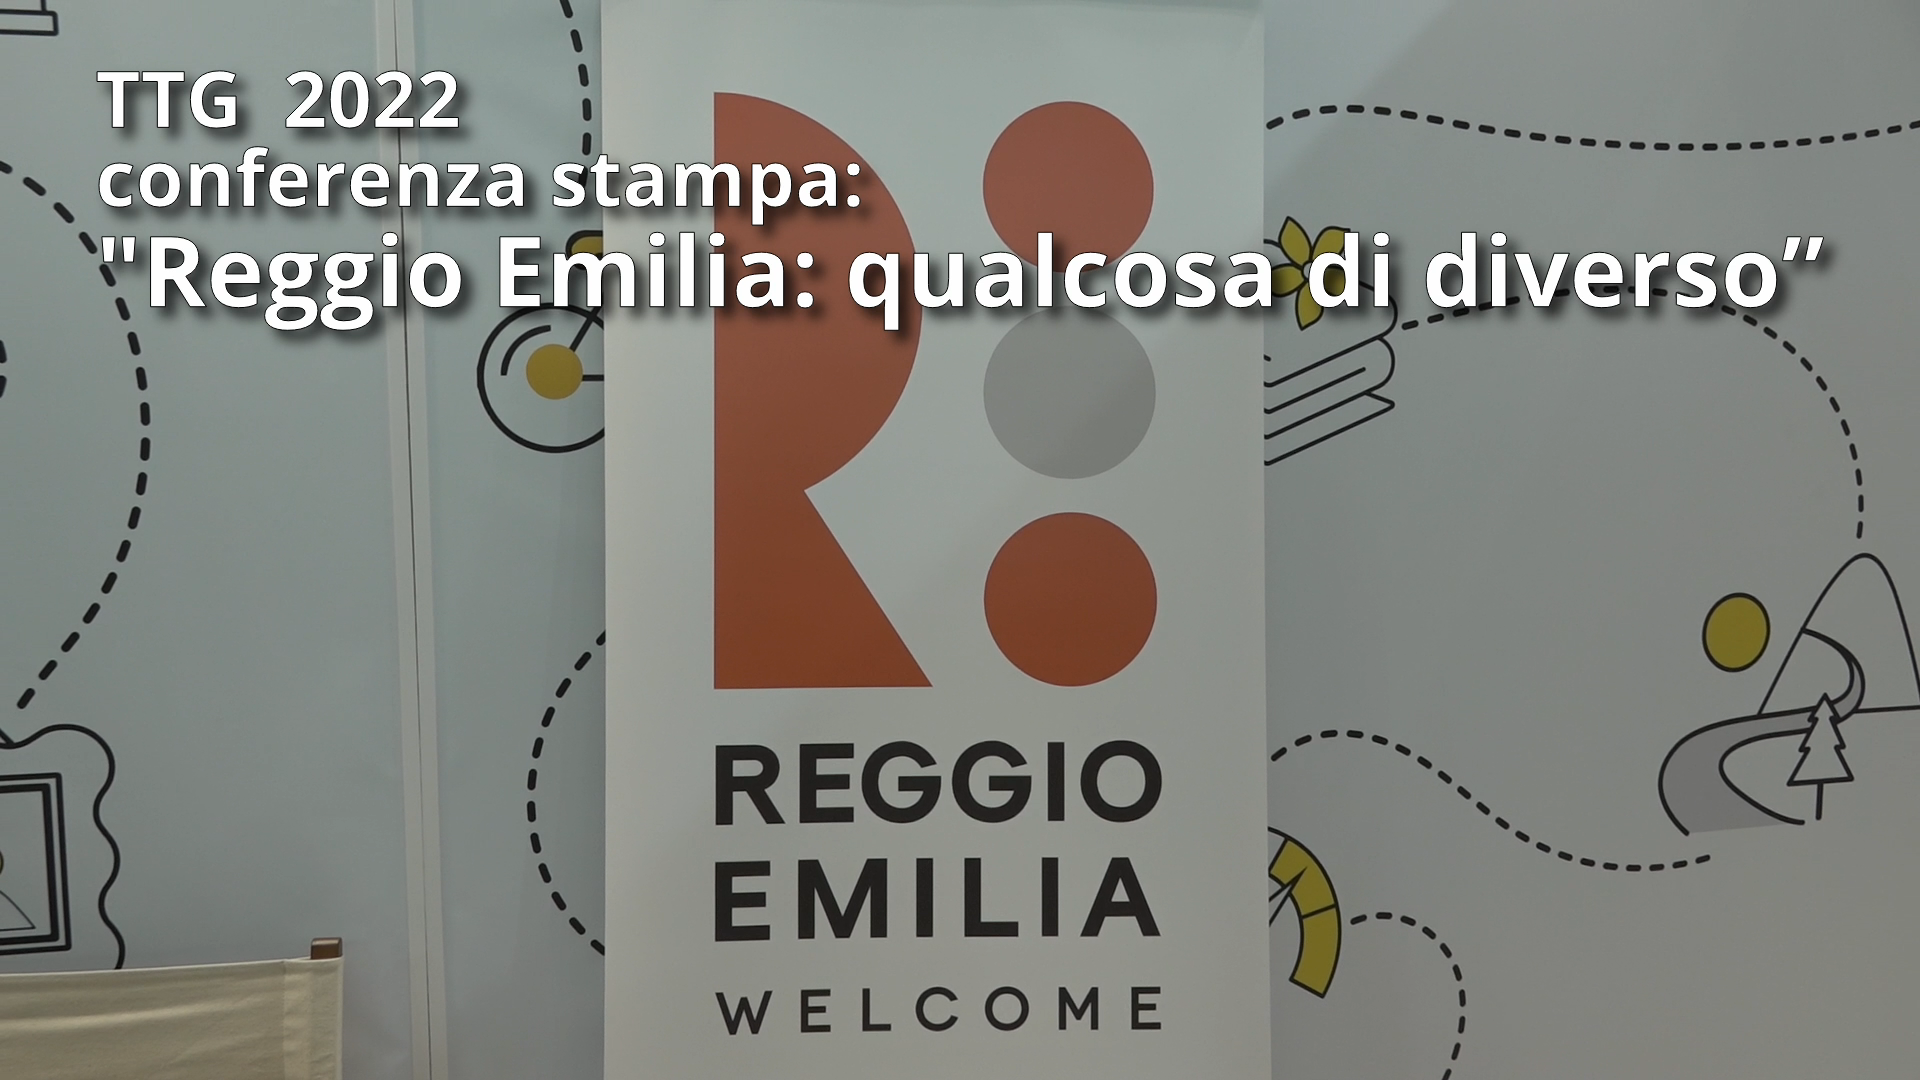 TTG 2022: Conferenza Stampa “Reggio Emilia: Qualcosa di diverso”